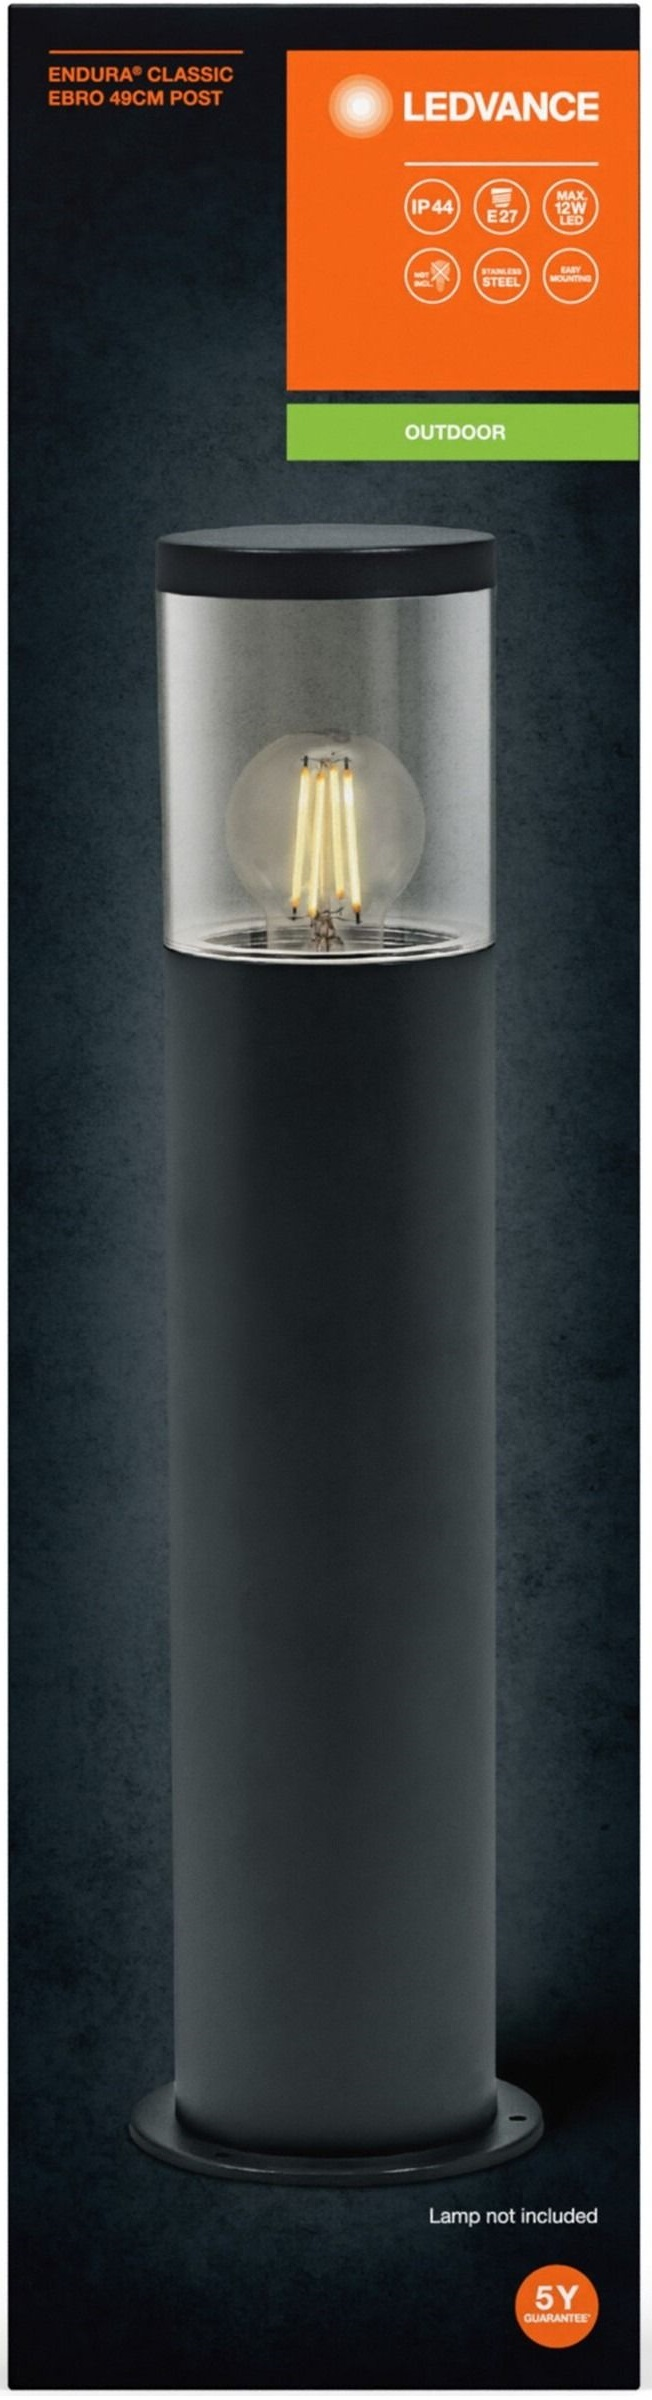 Светильник столбик Ledvance E27 49см Endura Classic Ebro черный (4058075835023) фото 3